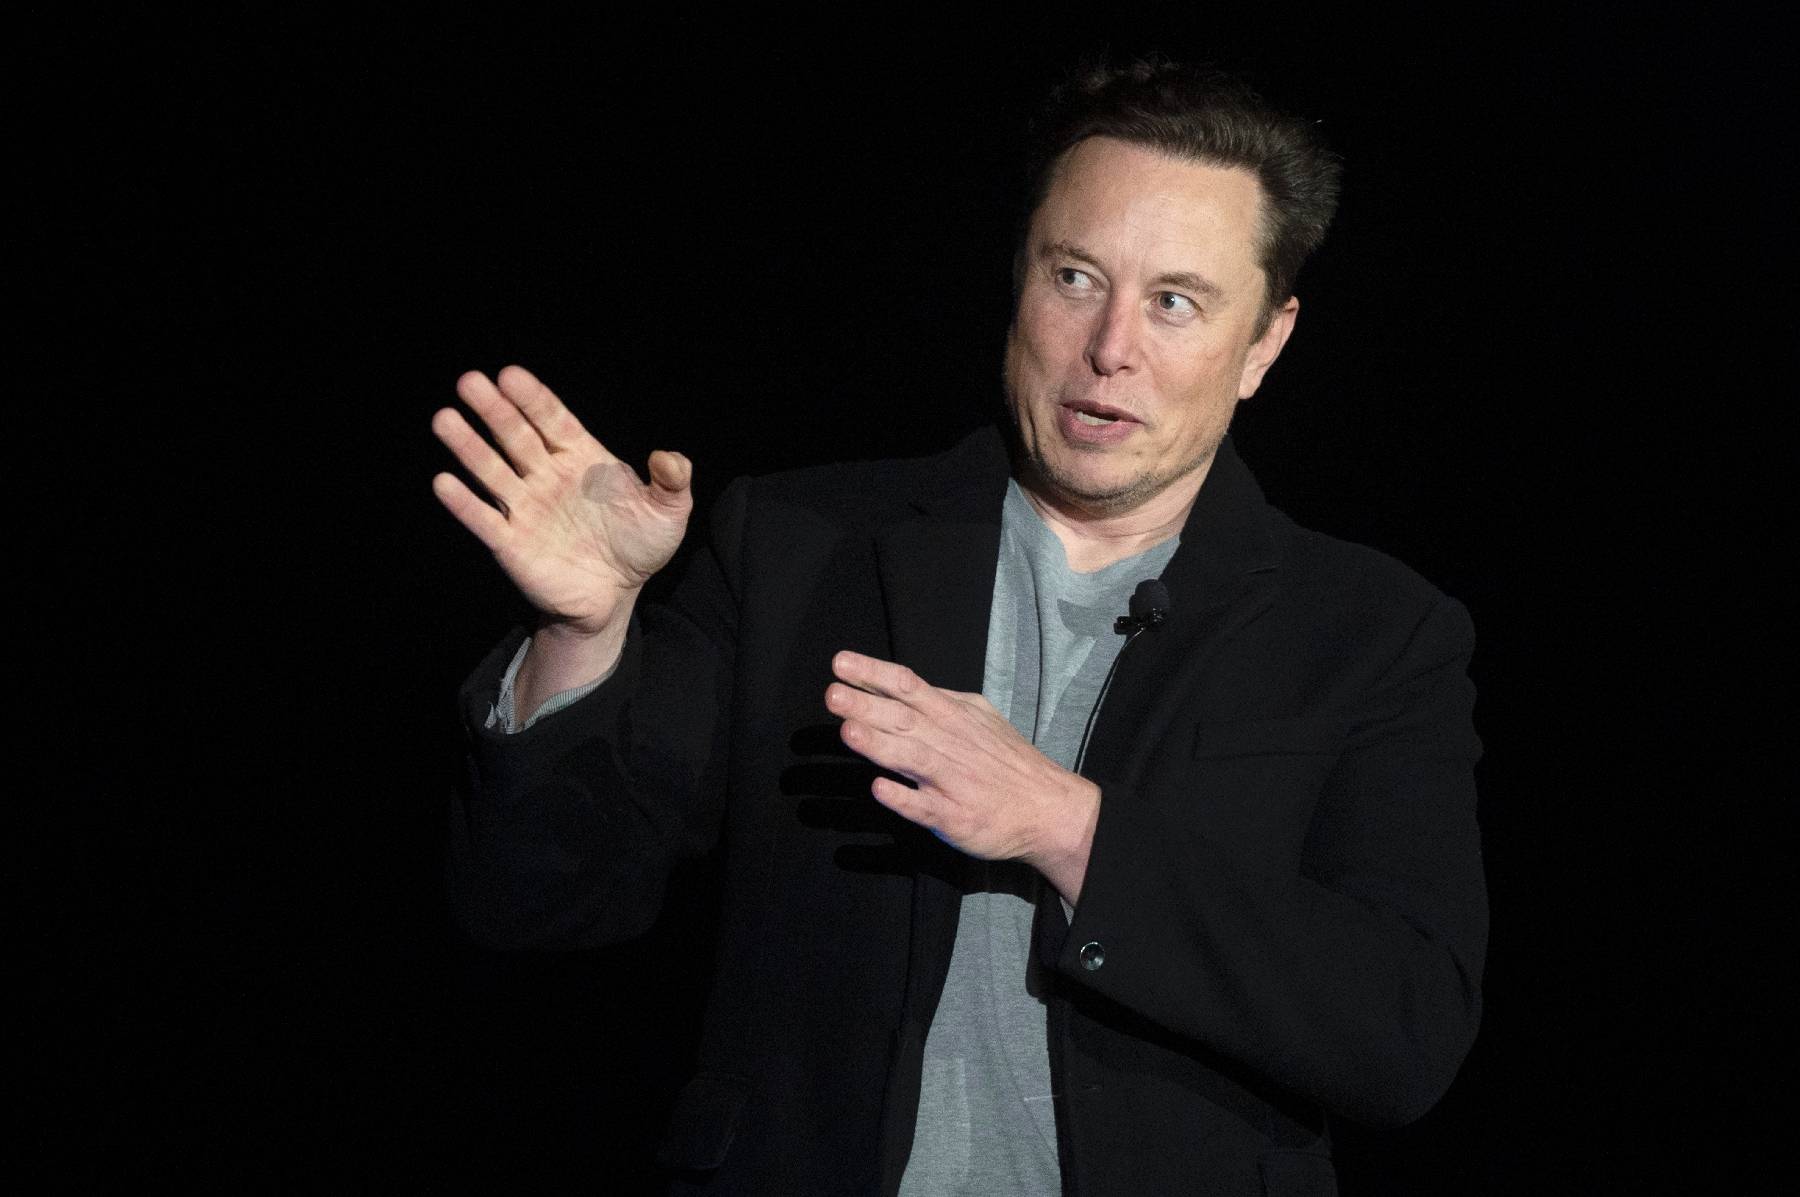 Musk dit qu'il va rétablir les comptes Twitter suspendus de journalistes